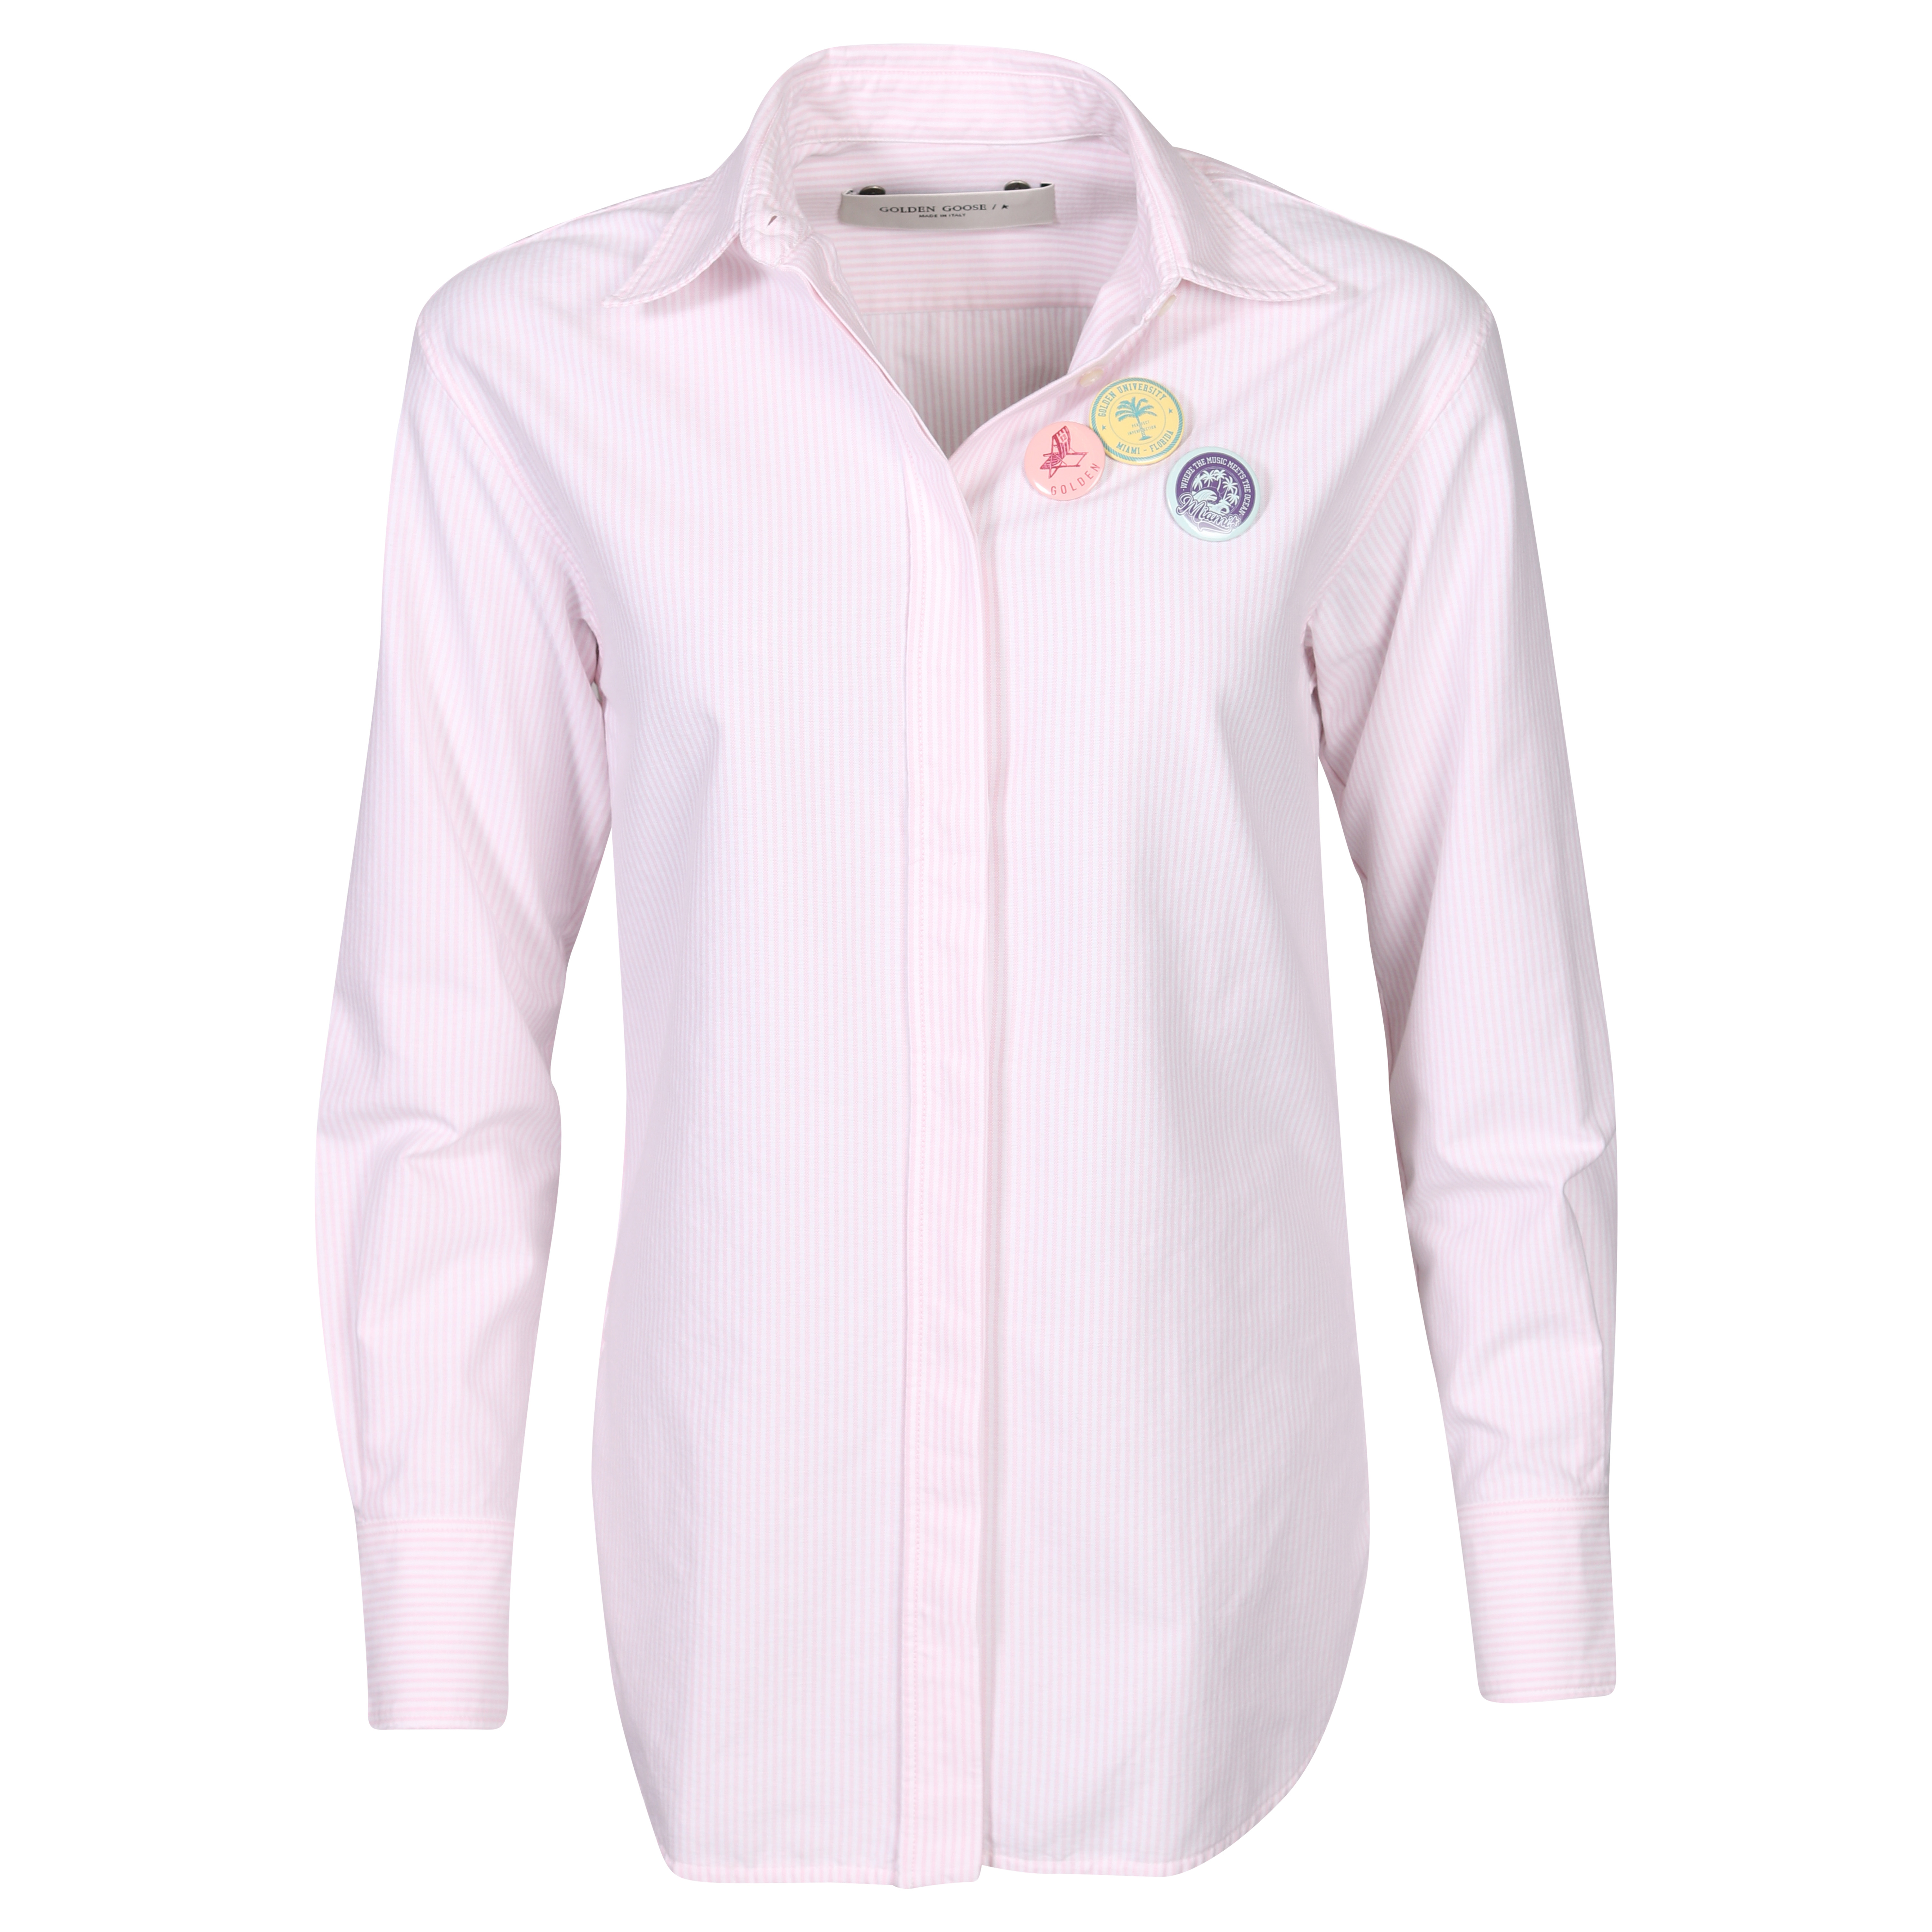 Golden Goose Journey Shirt Boyfriend Striped Oxford Cotton Pink/White XS